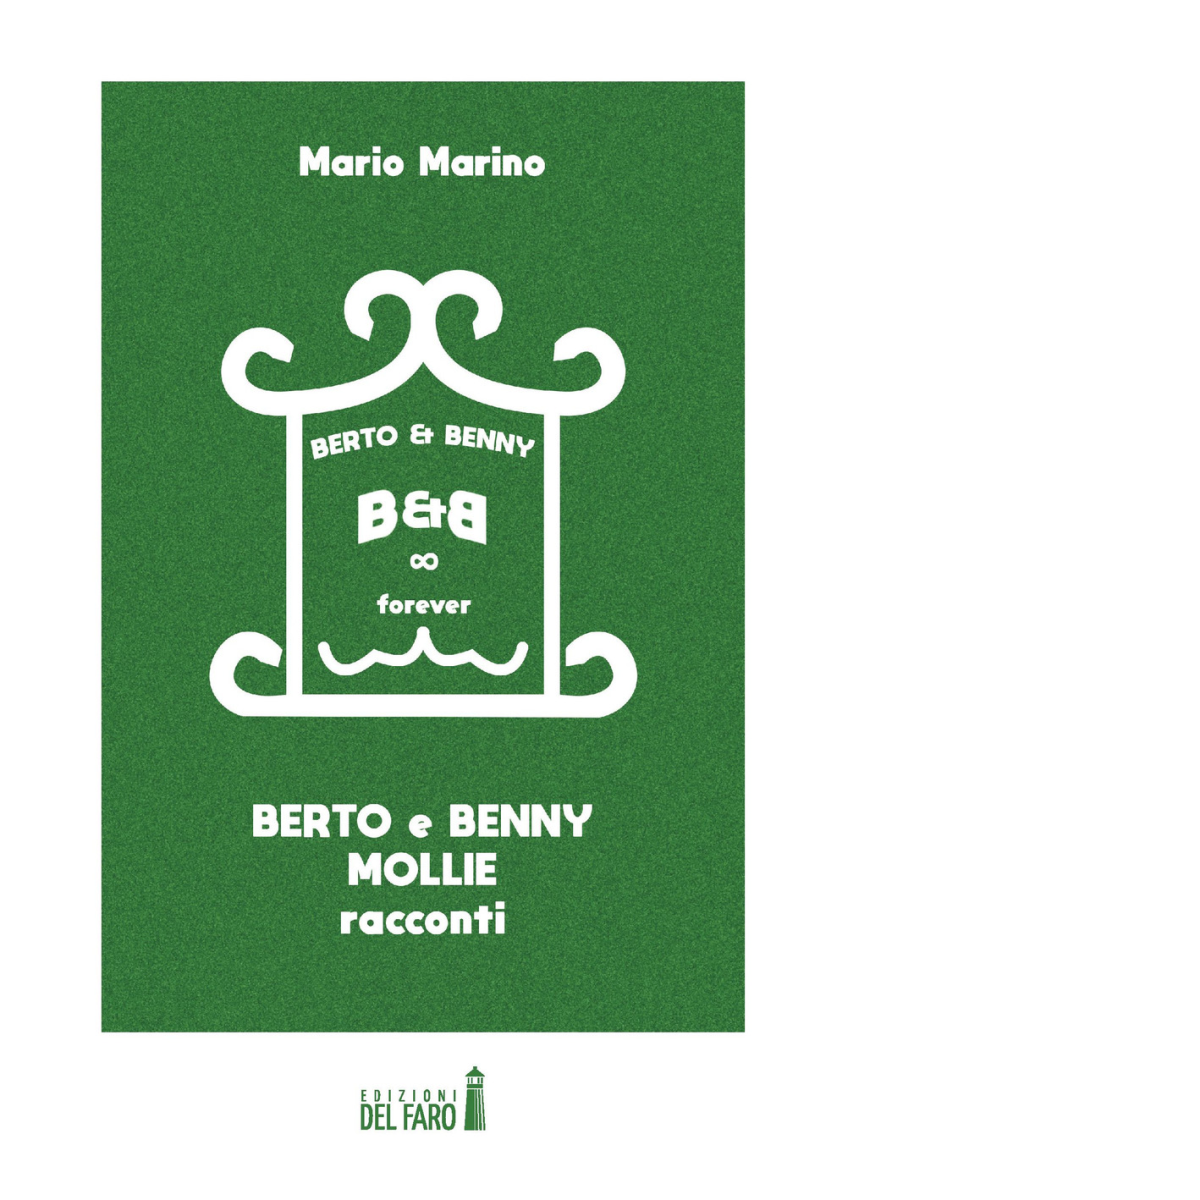 Berto & Benny. Mollie di Marino Mario - Edizioni Del faro, 2022